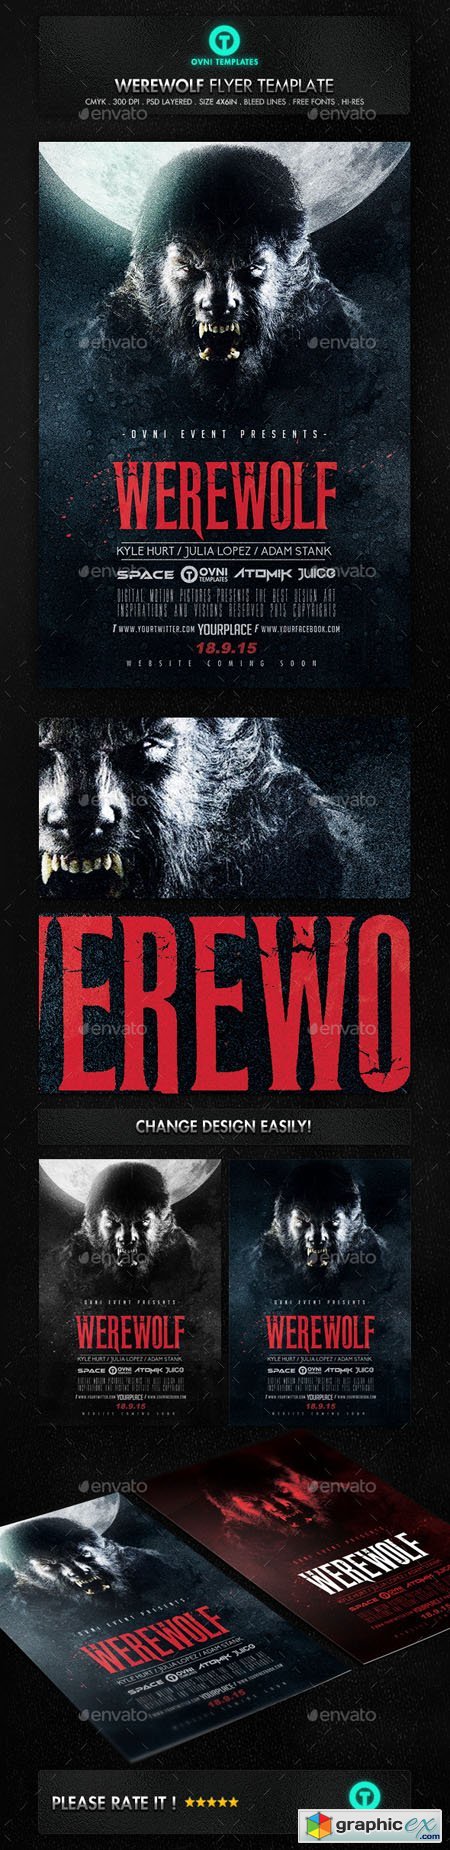 Werewolf Dark Horror Movie Flyer Poster Template